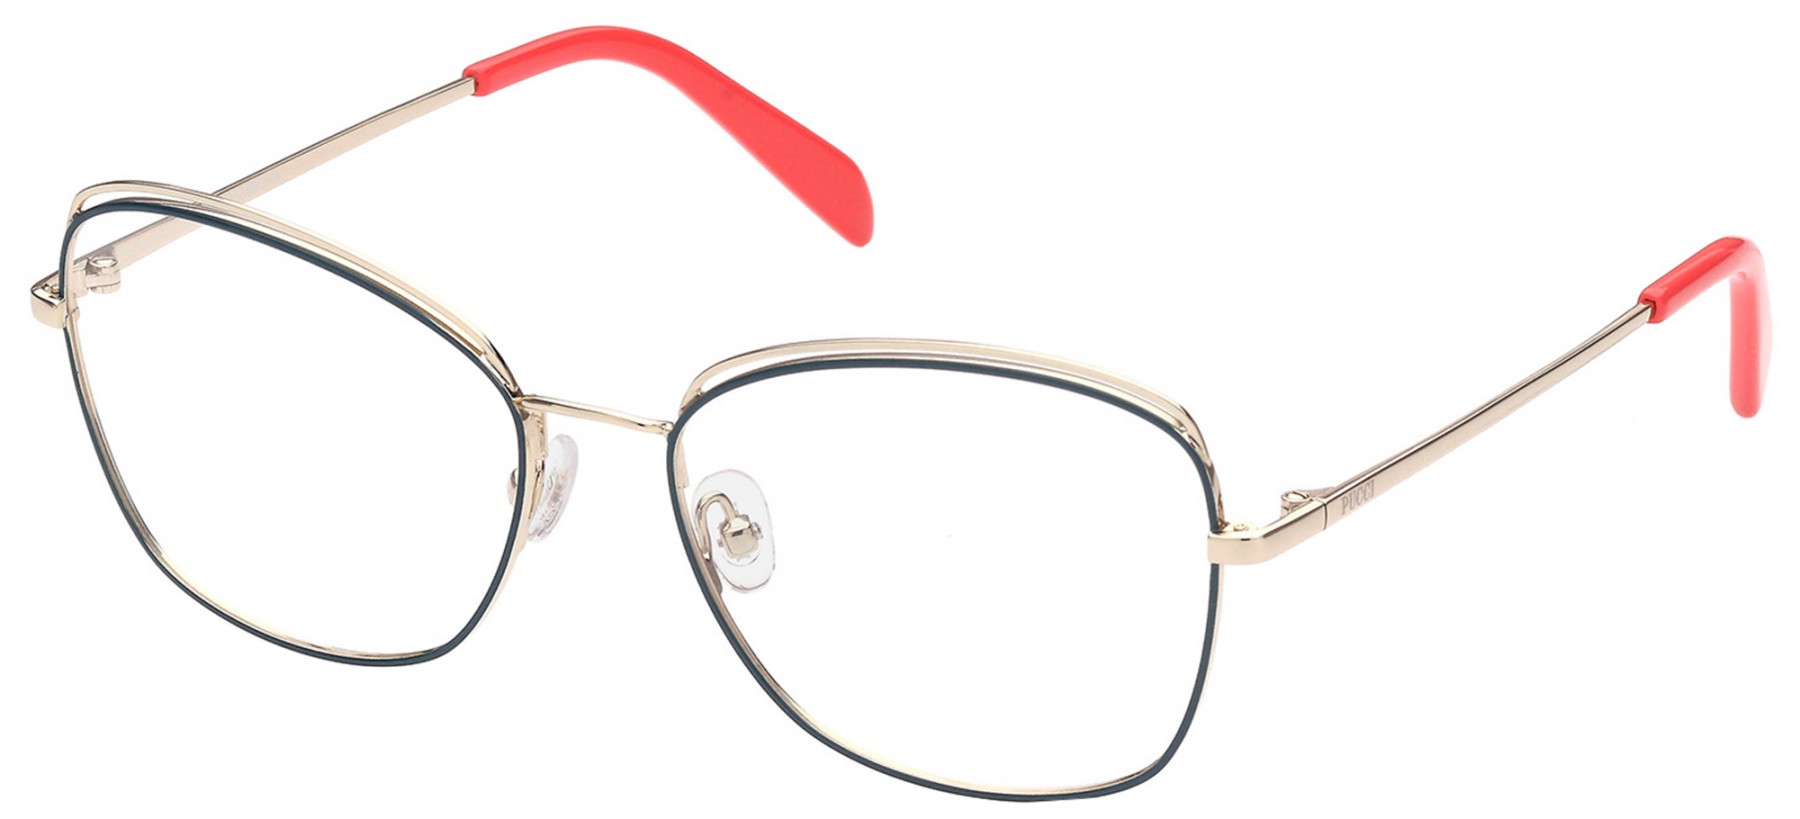 Emilio Pucci 5167 089 - Oculos de Grau